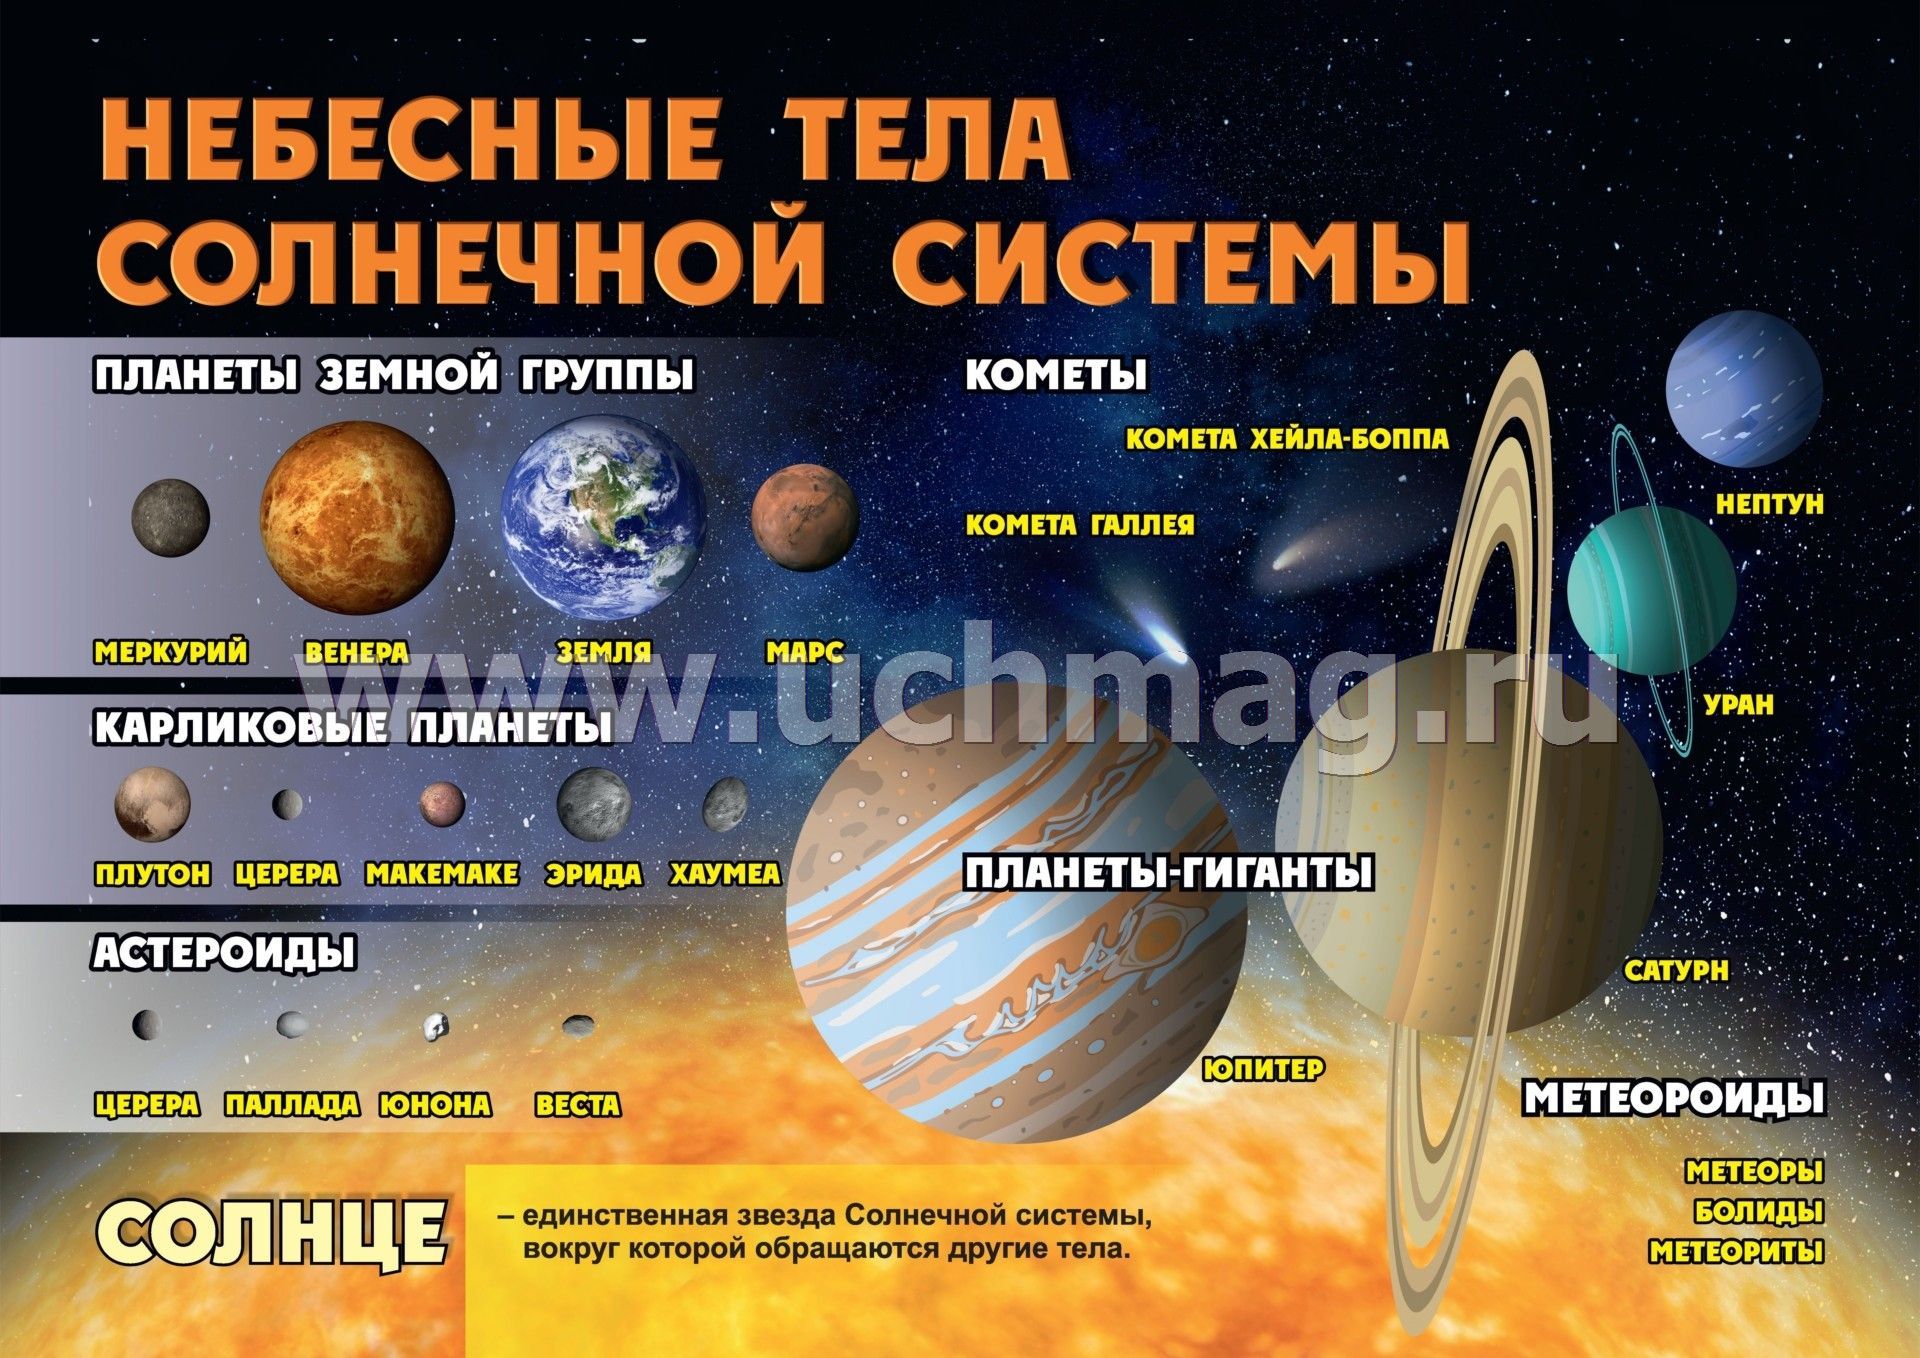 Расположить небесных тел. Небесные тела солнечной системы. Плакат по астрономии. Планеты солнечной системы кометы. Космические объекты солнечной системы.